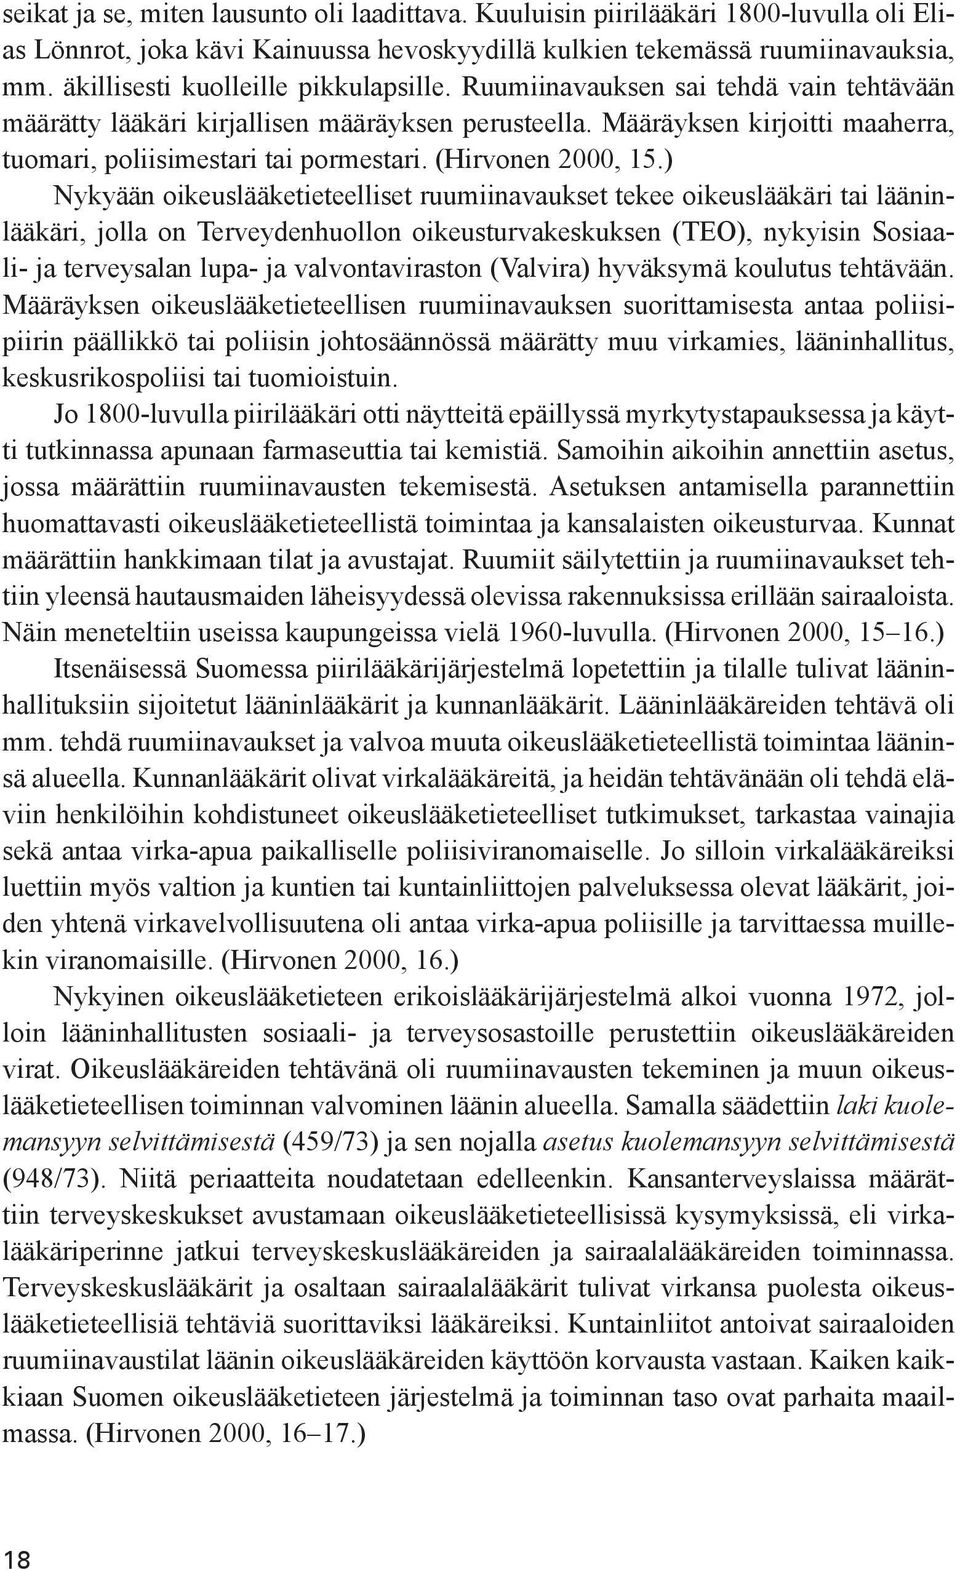 Määräyksen kirjoitti maaherra, tuomari, poliisimestari tai pormestari. (Hirvonen 2000, 15.